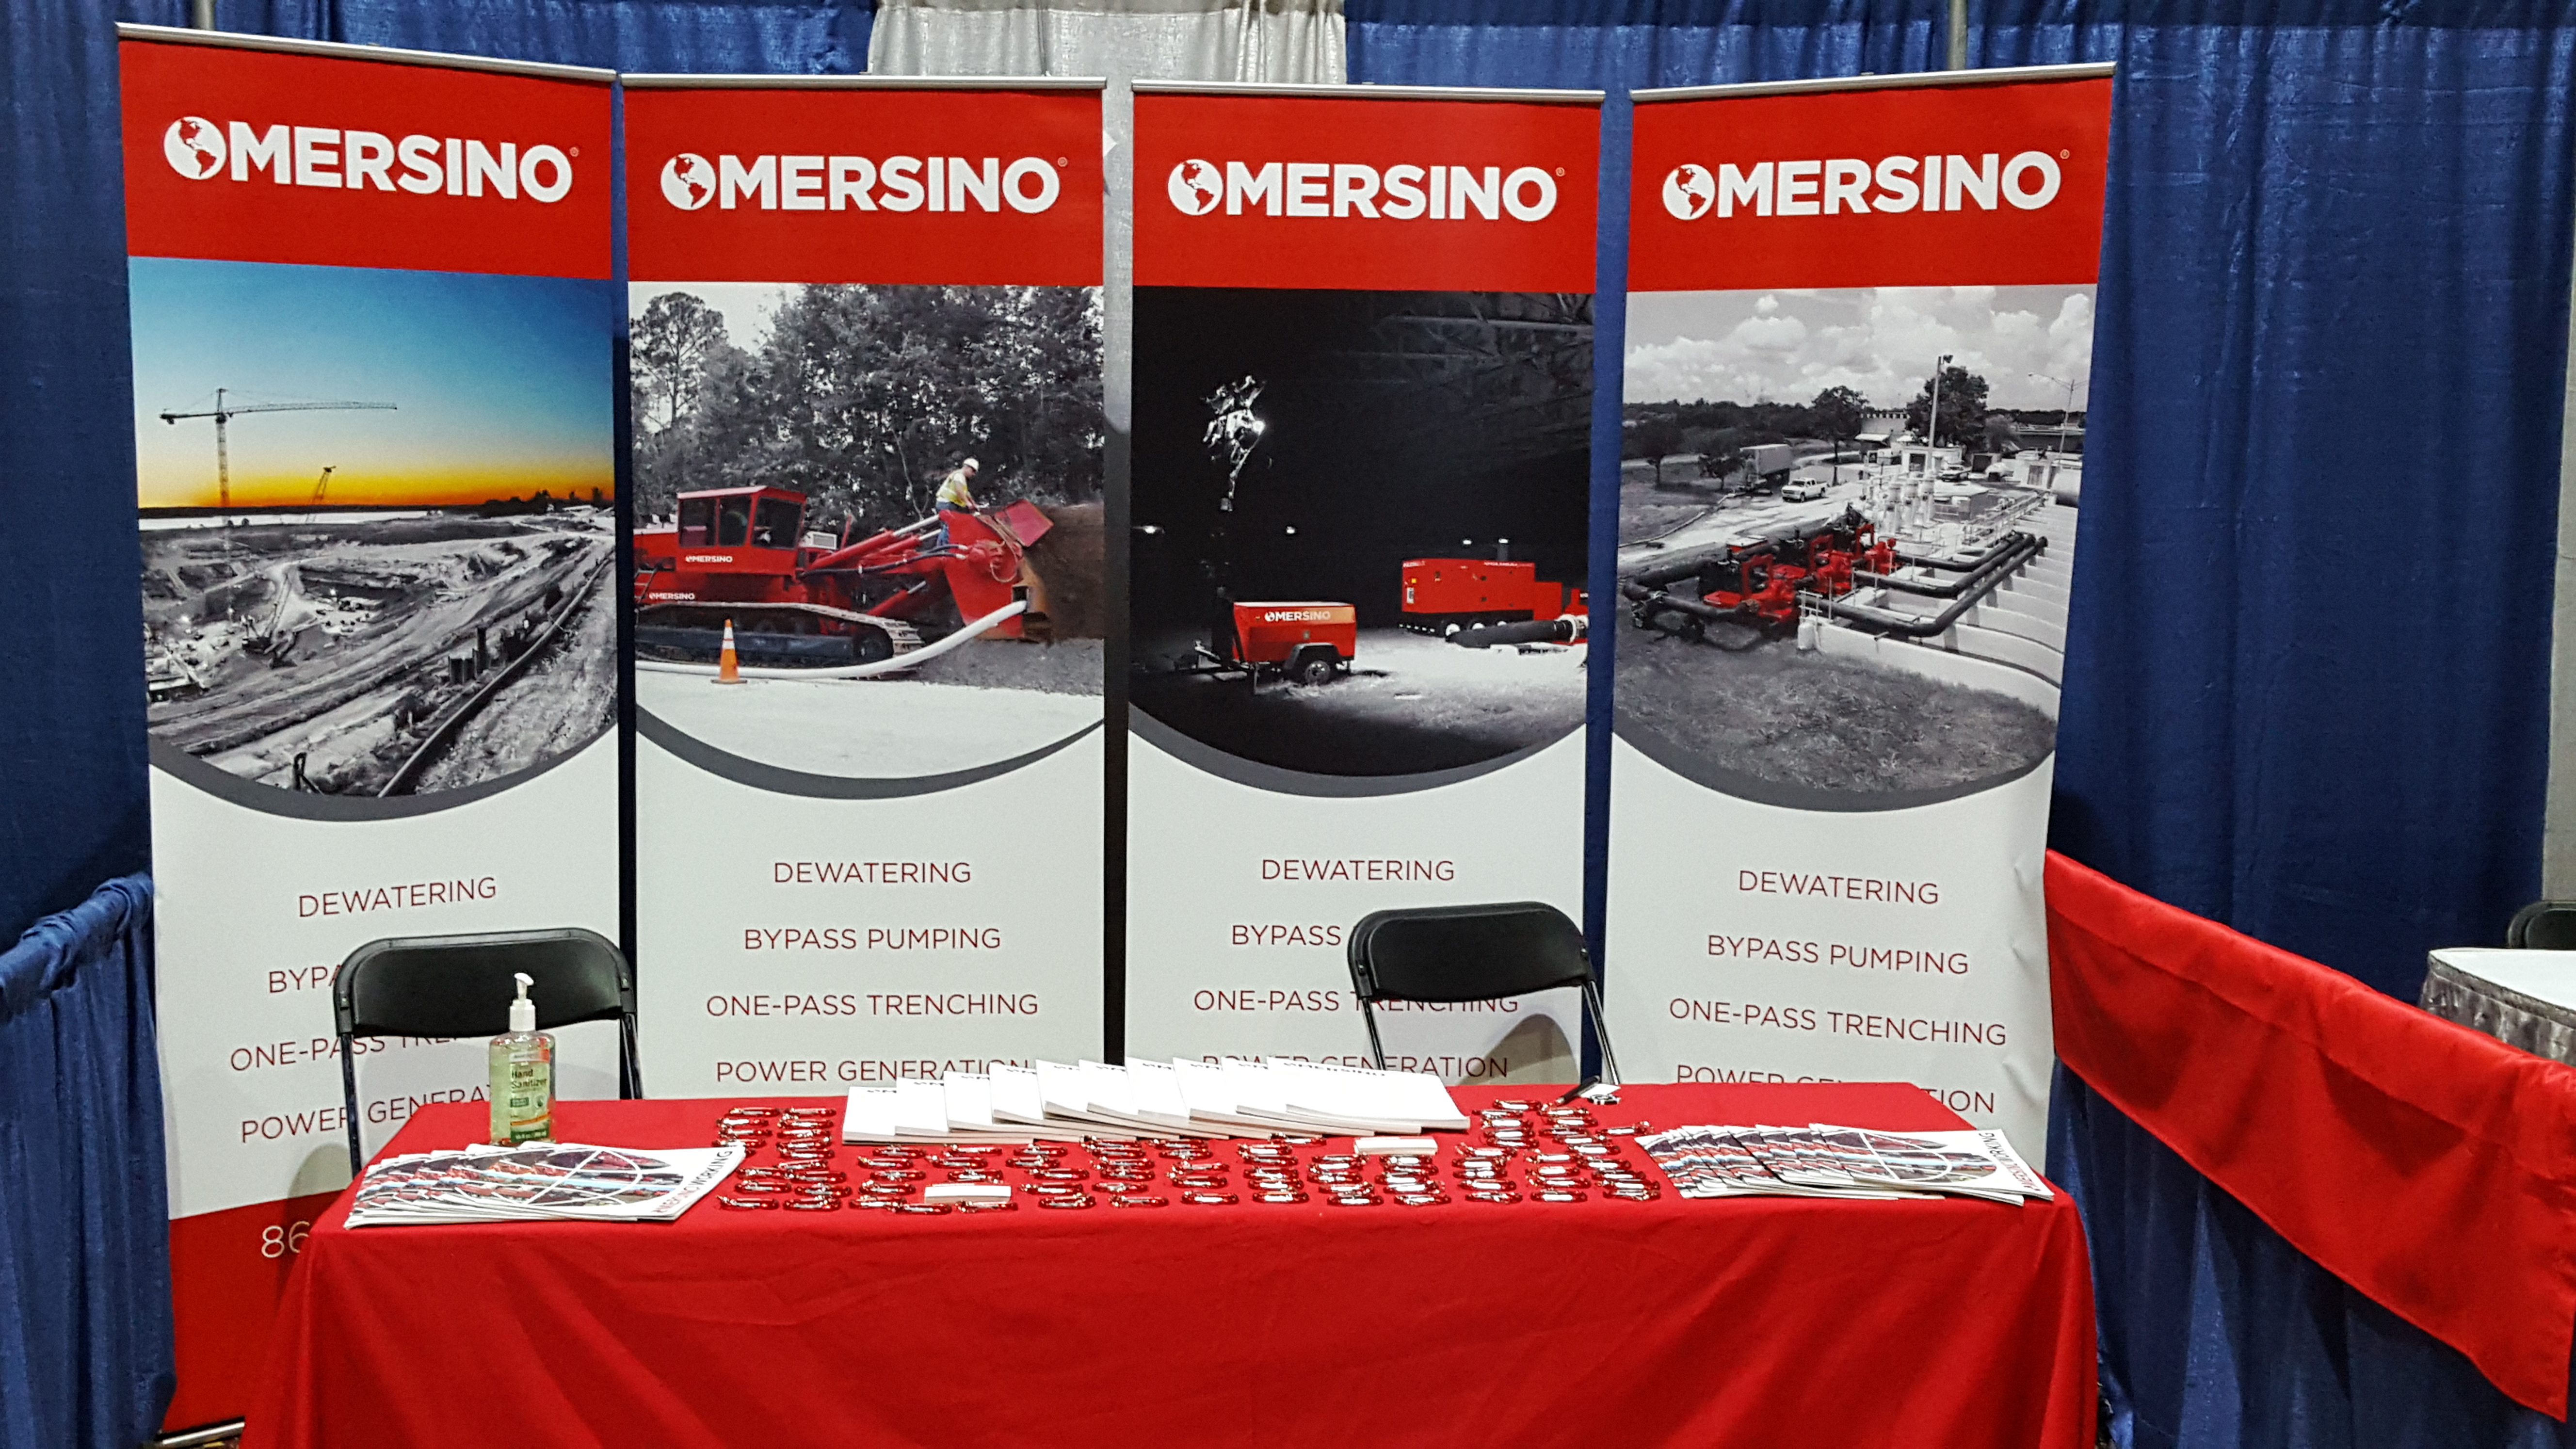 Mersino display at MITA Conference 2016